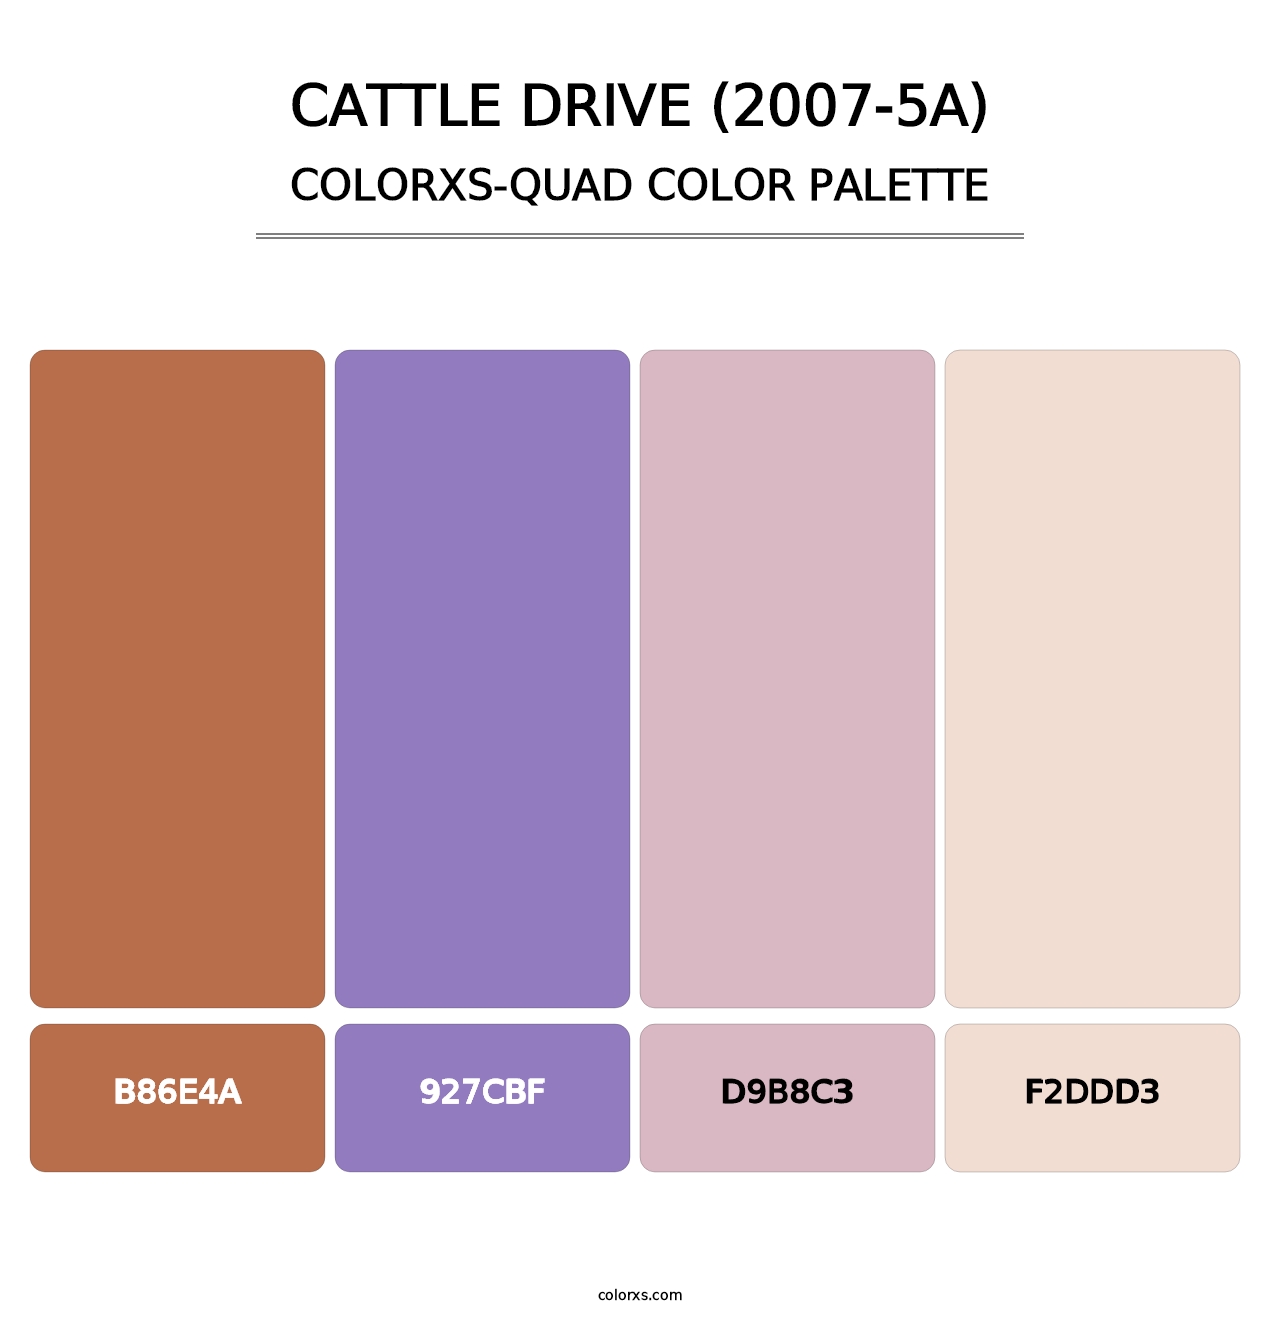 Cattle Drive (2007-5A) - Colorxs Quad Palette